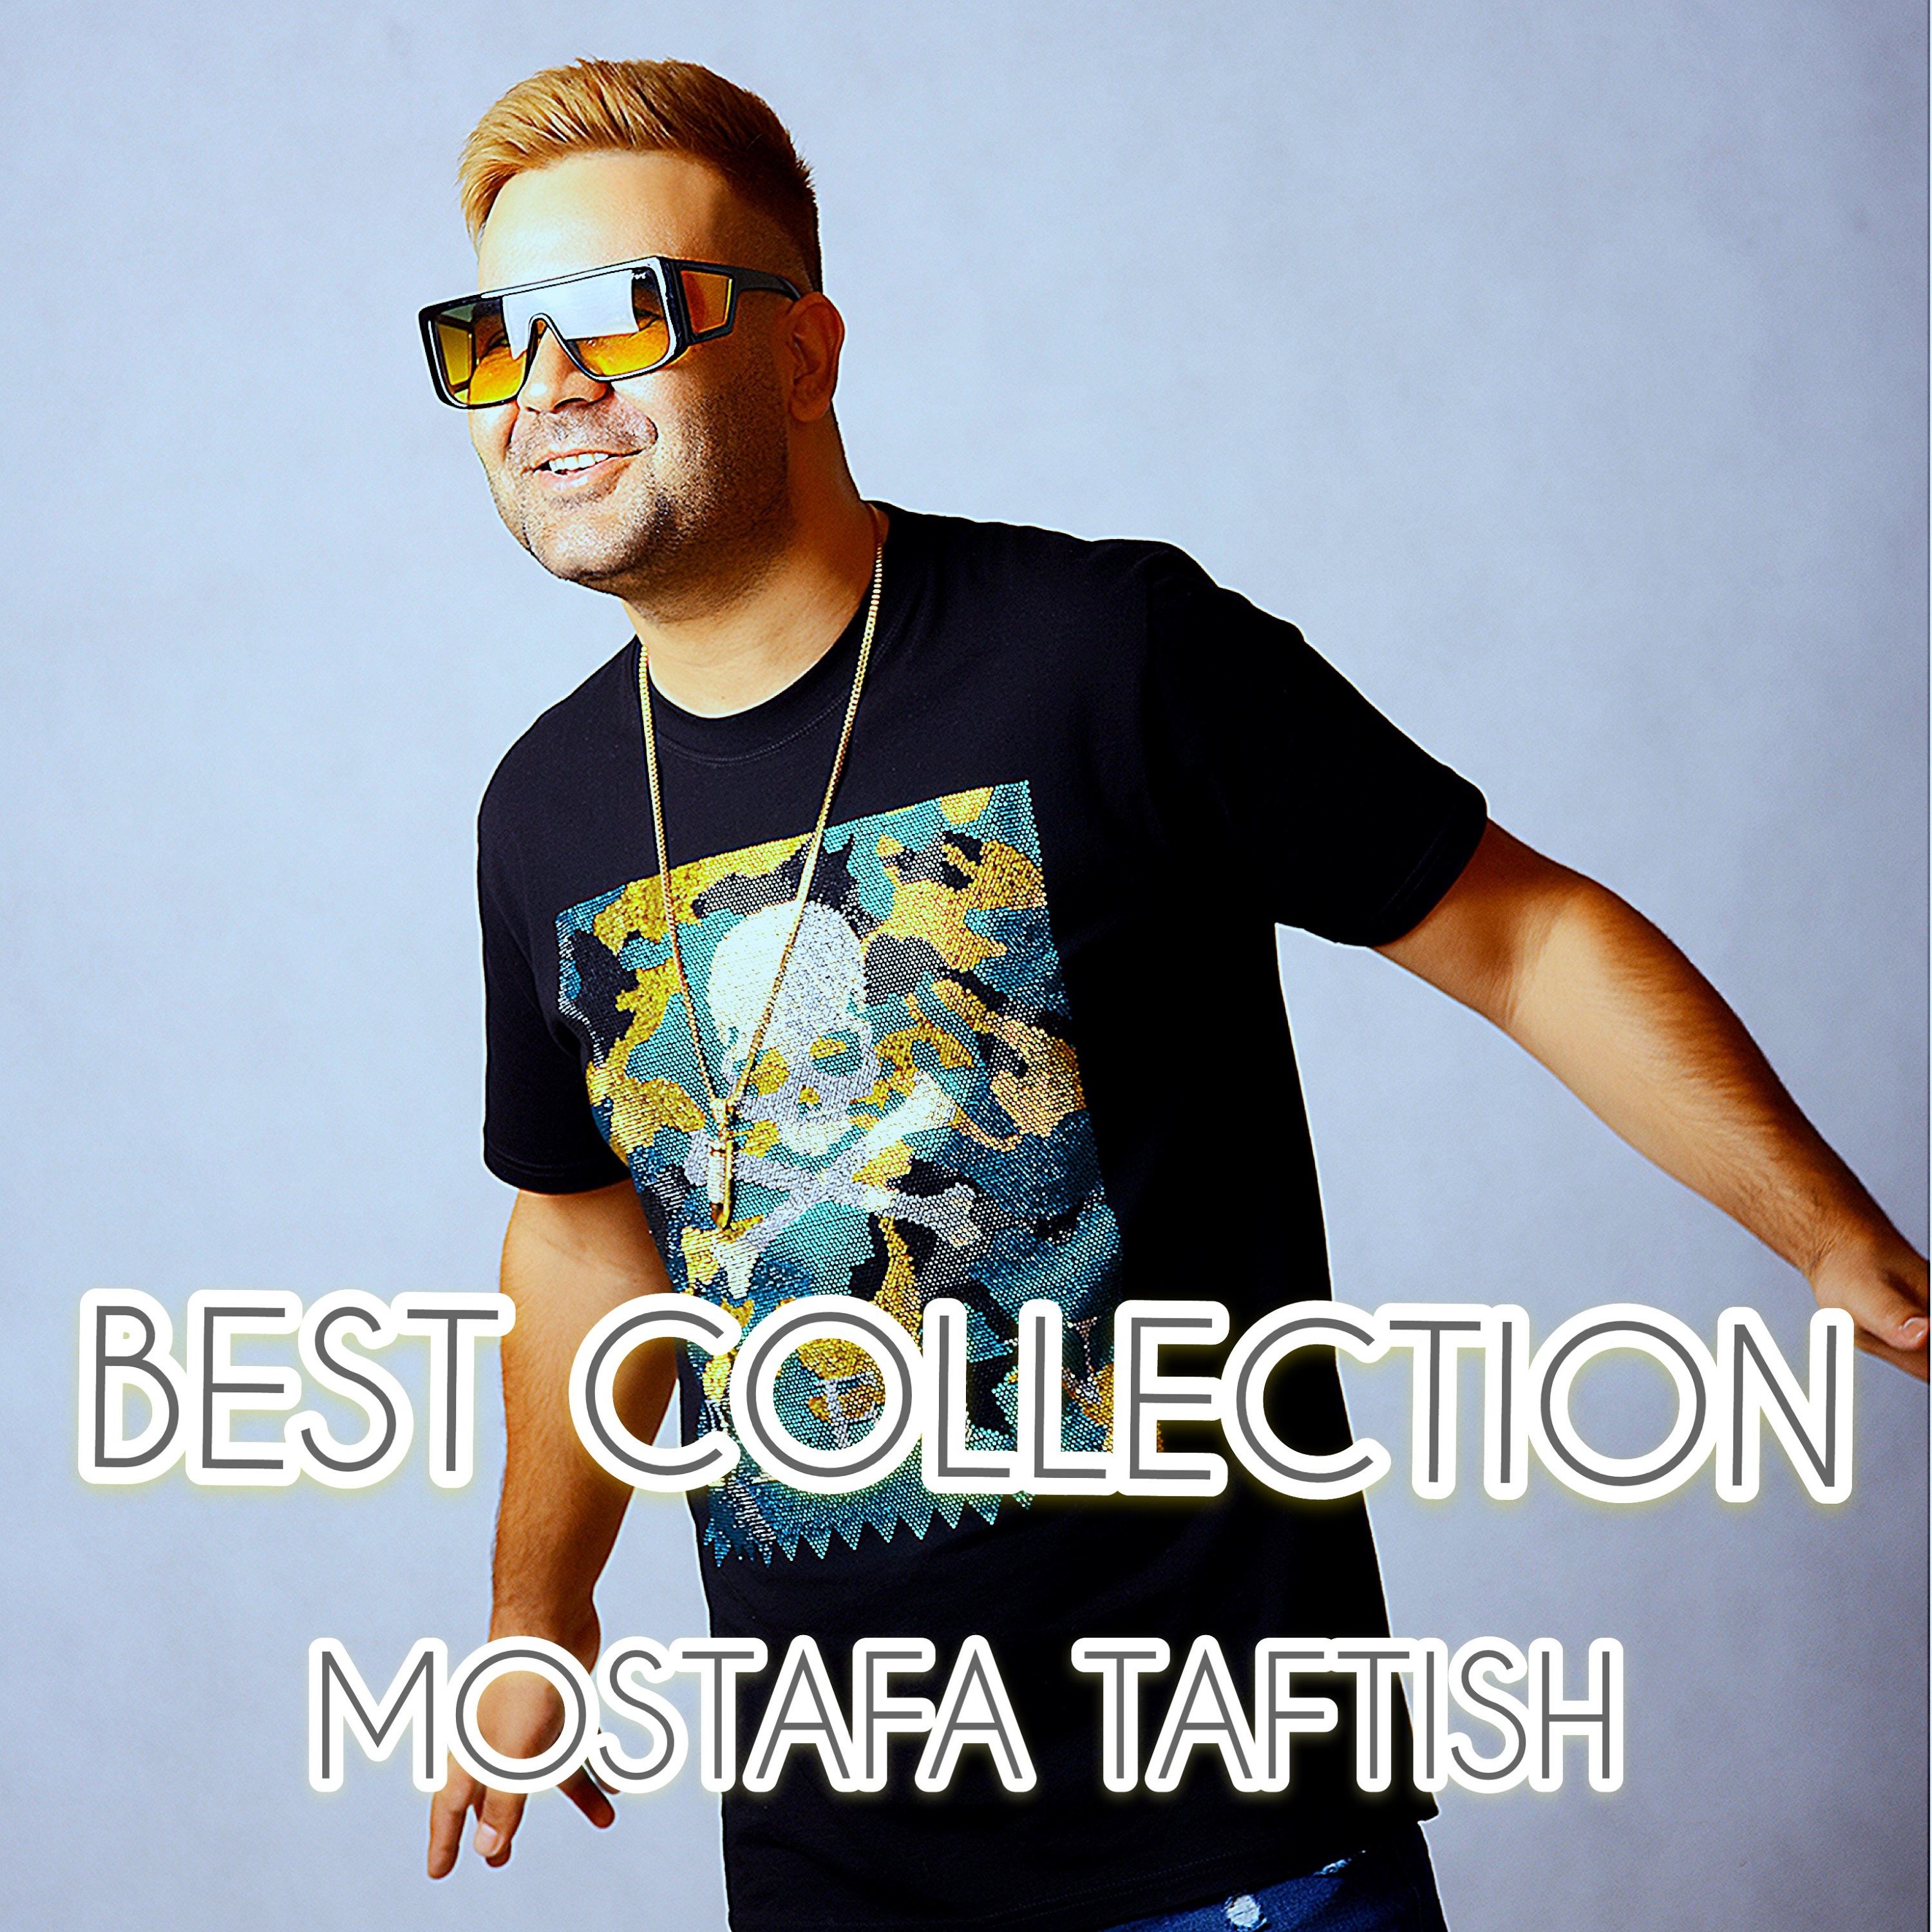  دانلود آهنگ جدید مصطفی تفتیش - عشق جنوبی | Download New Music By Mostafa Taftish - Eshghe Jonoubi (feat. Abolfazl Esmaeili)